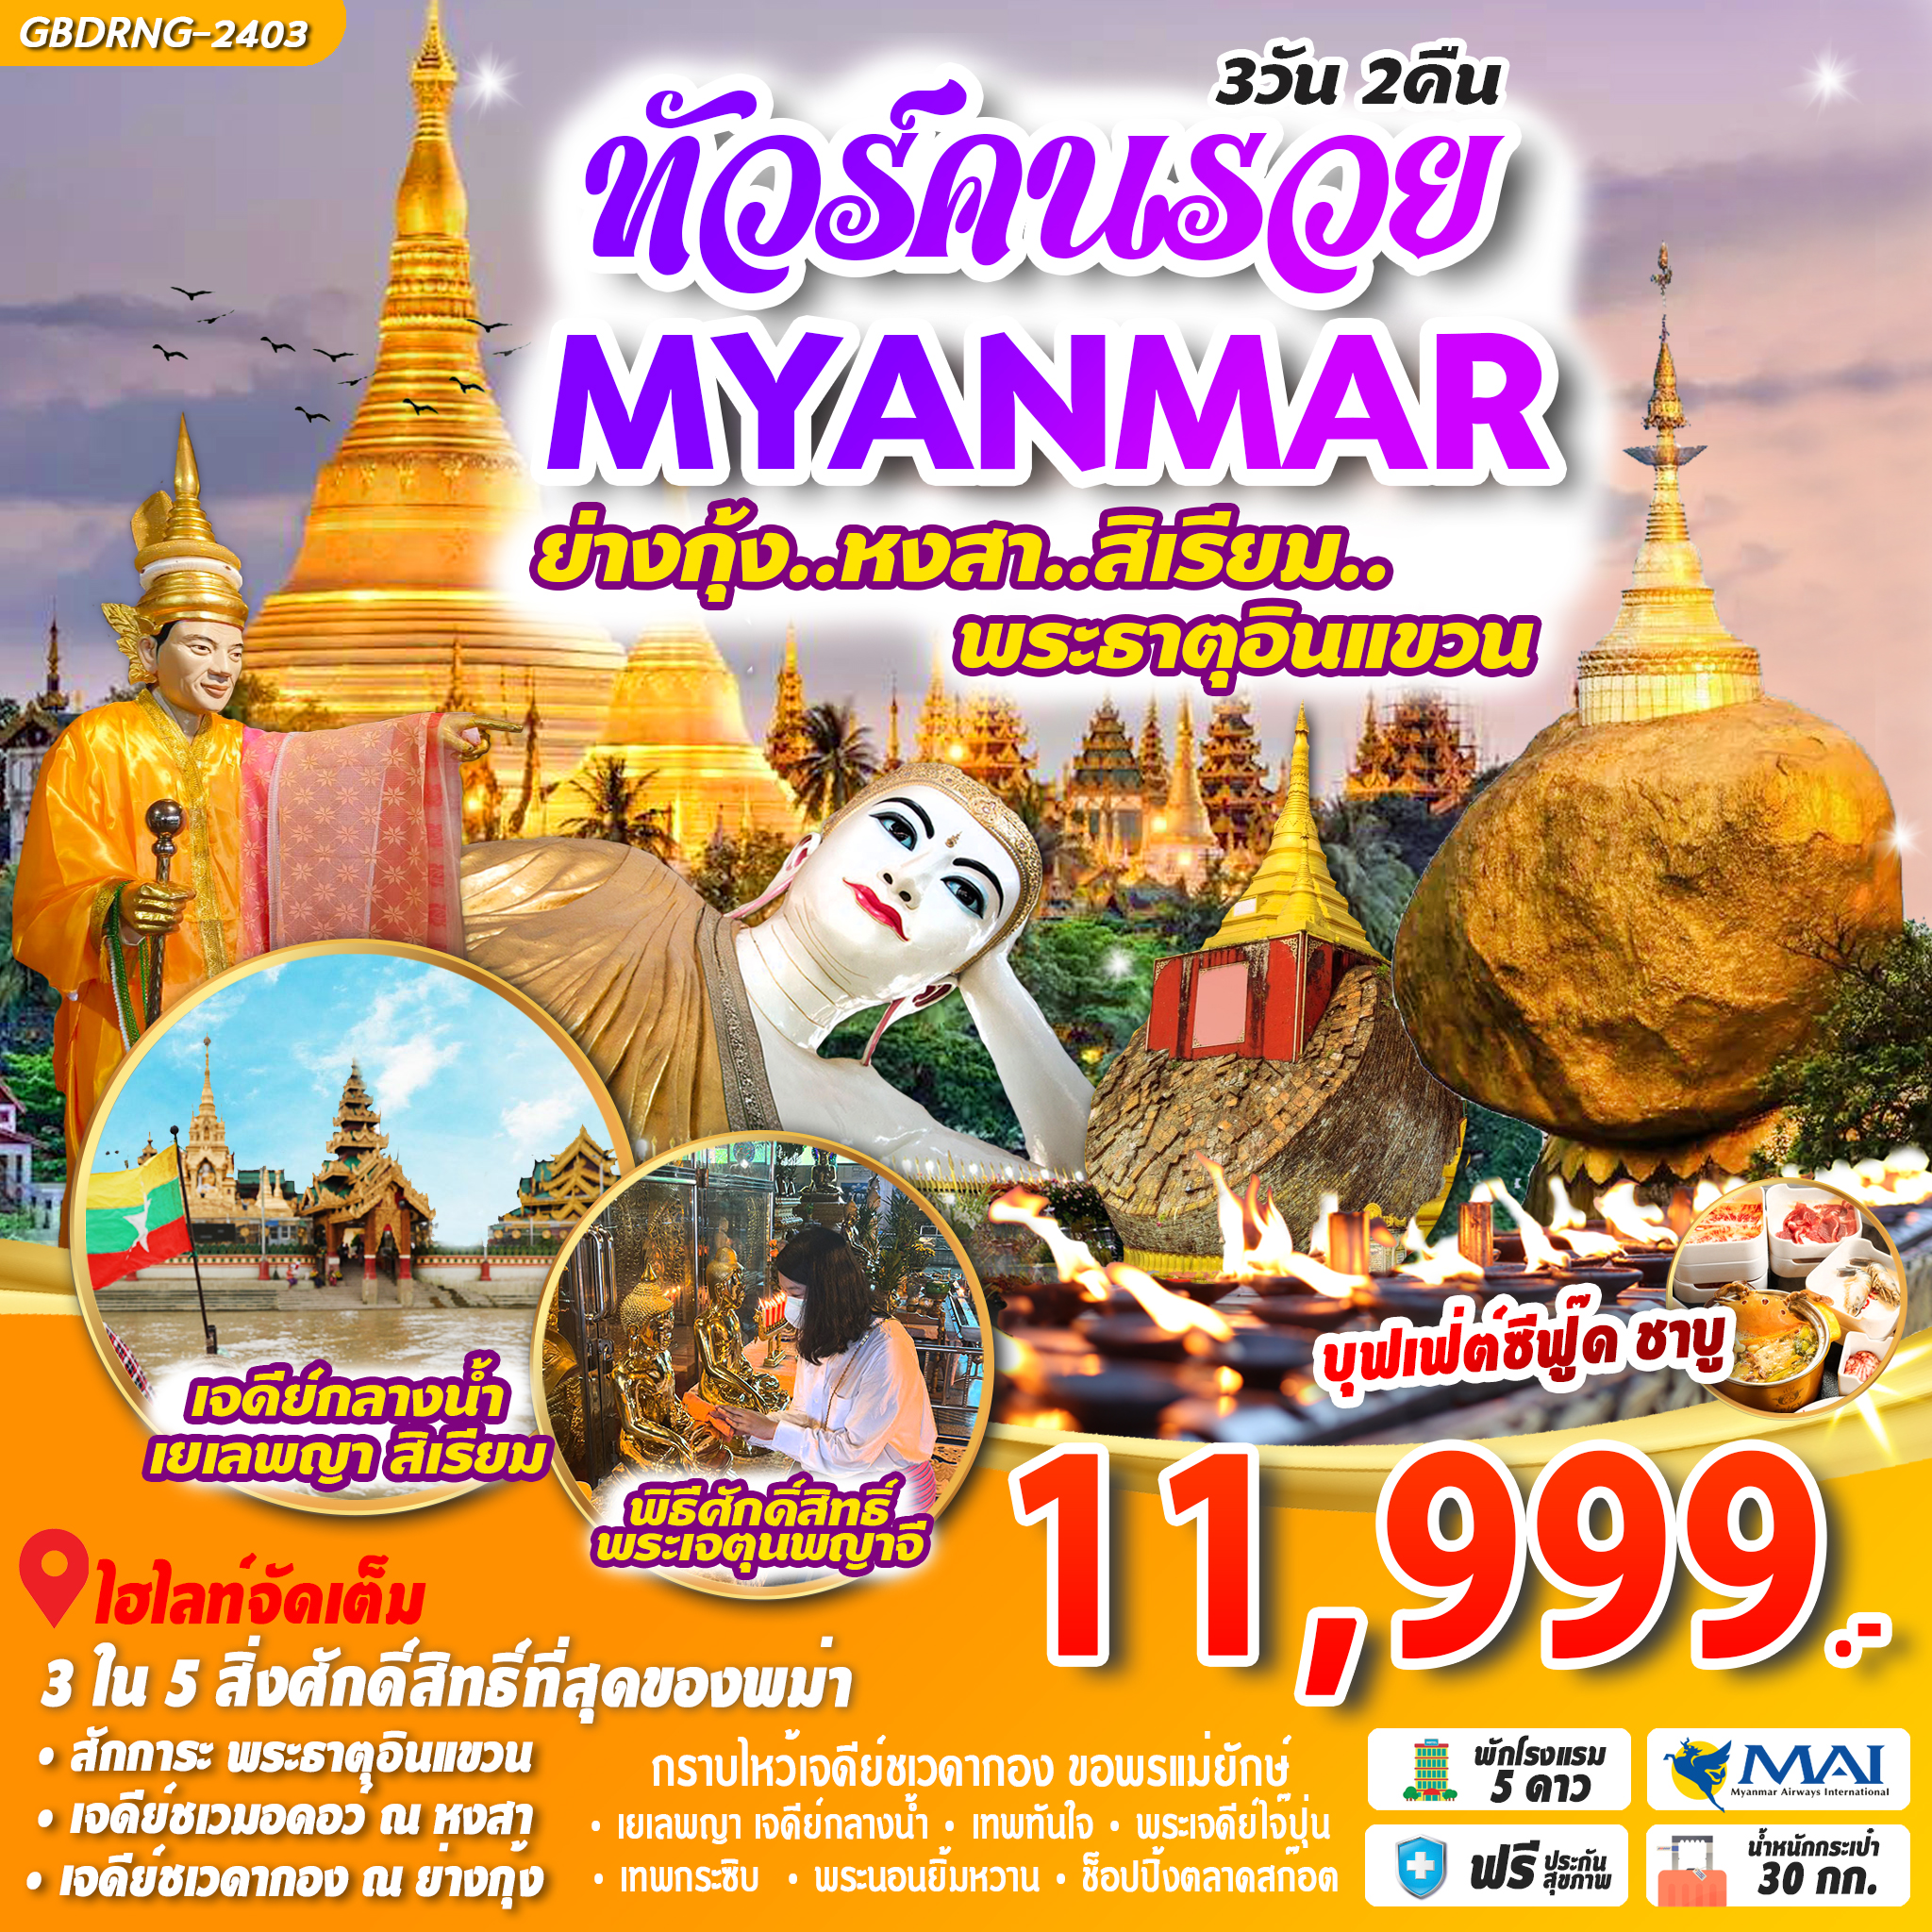 ทัวร์คนรวย MYANMAR ย่างกุ้ง หงสา สิเรียม พระธาตุอินแขวน 3D2N by 8M